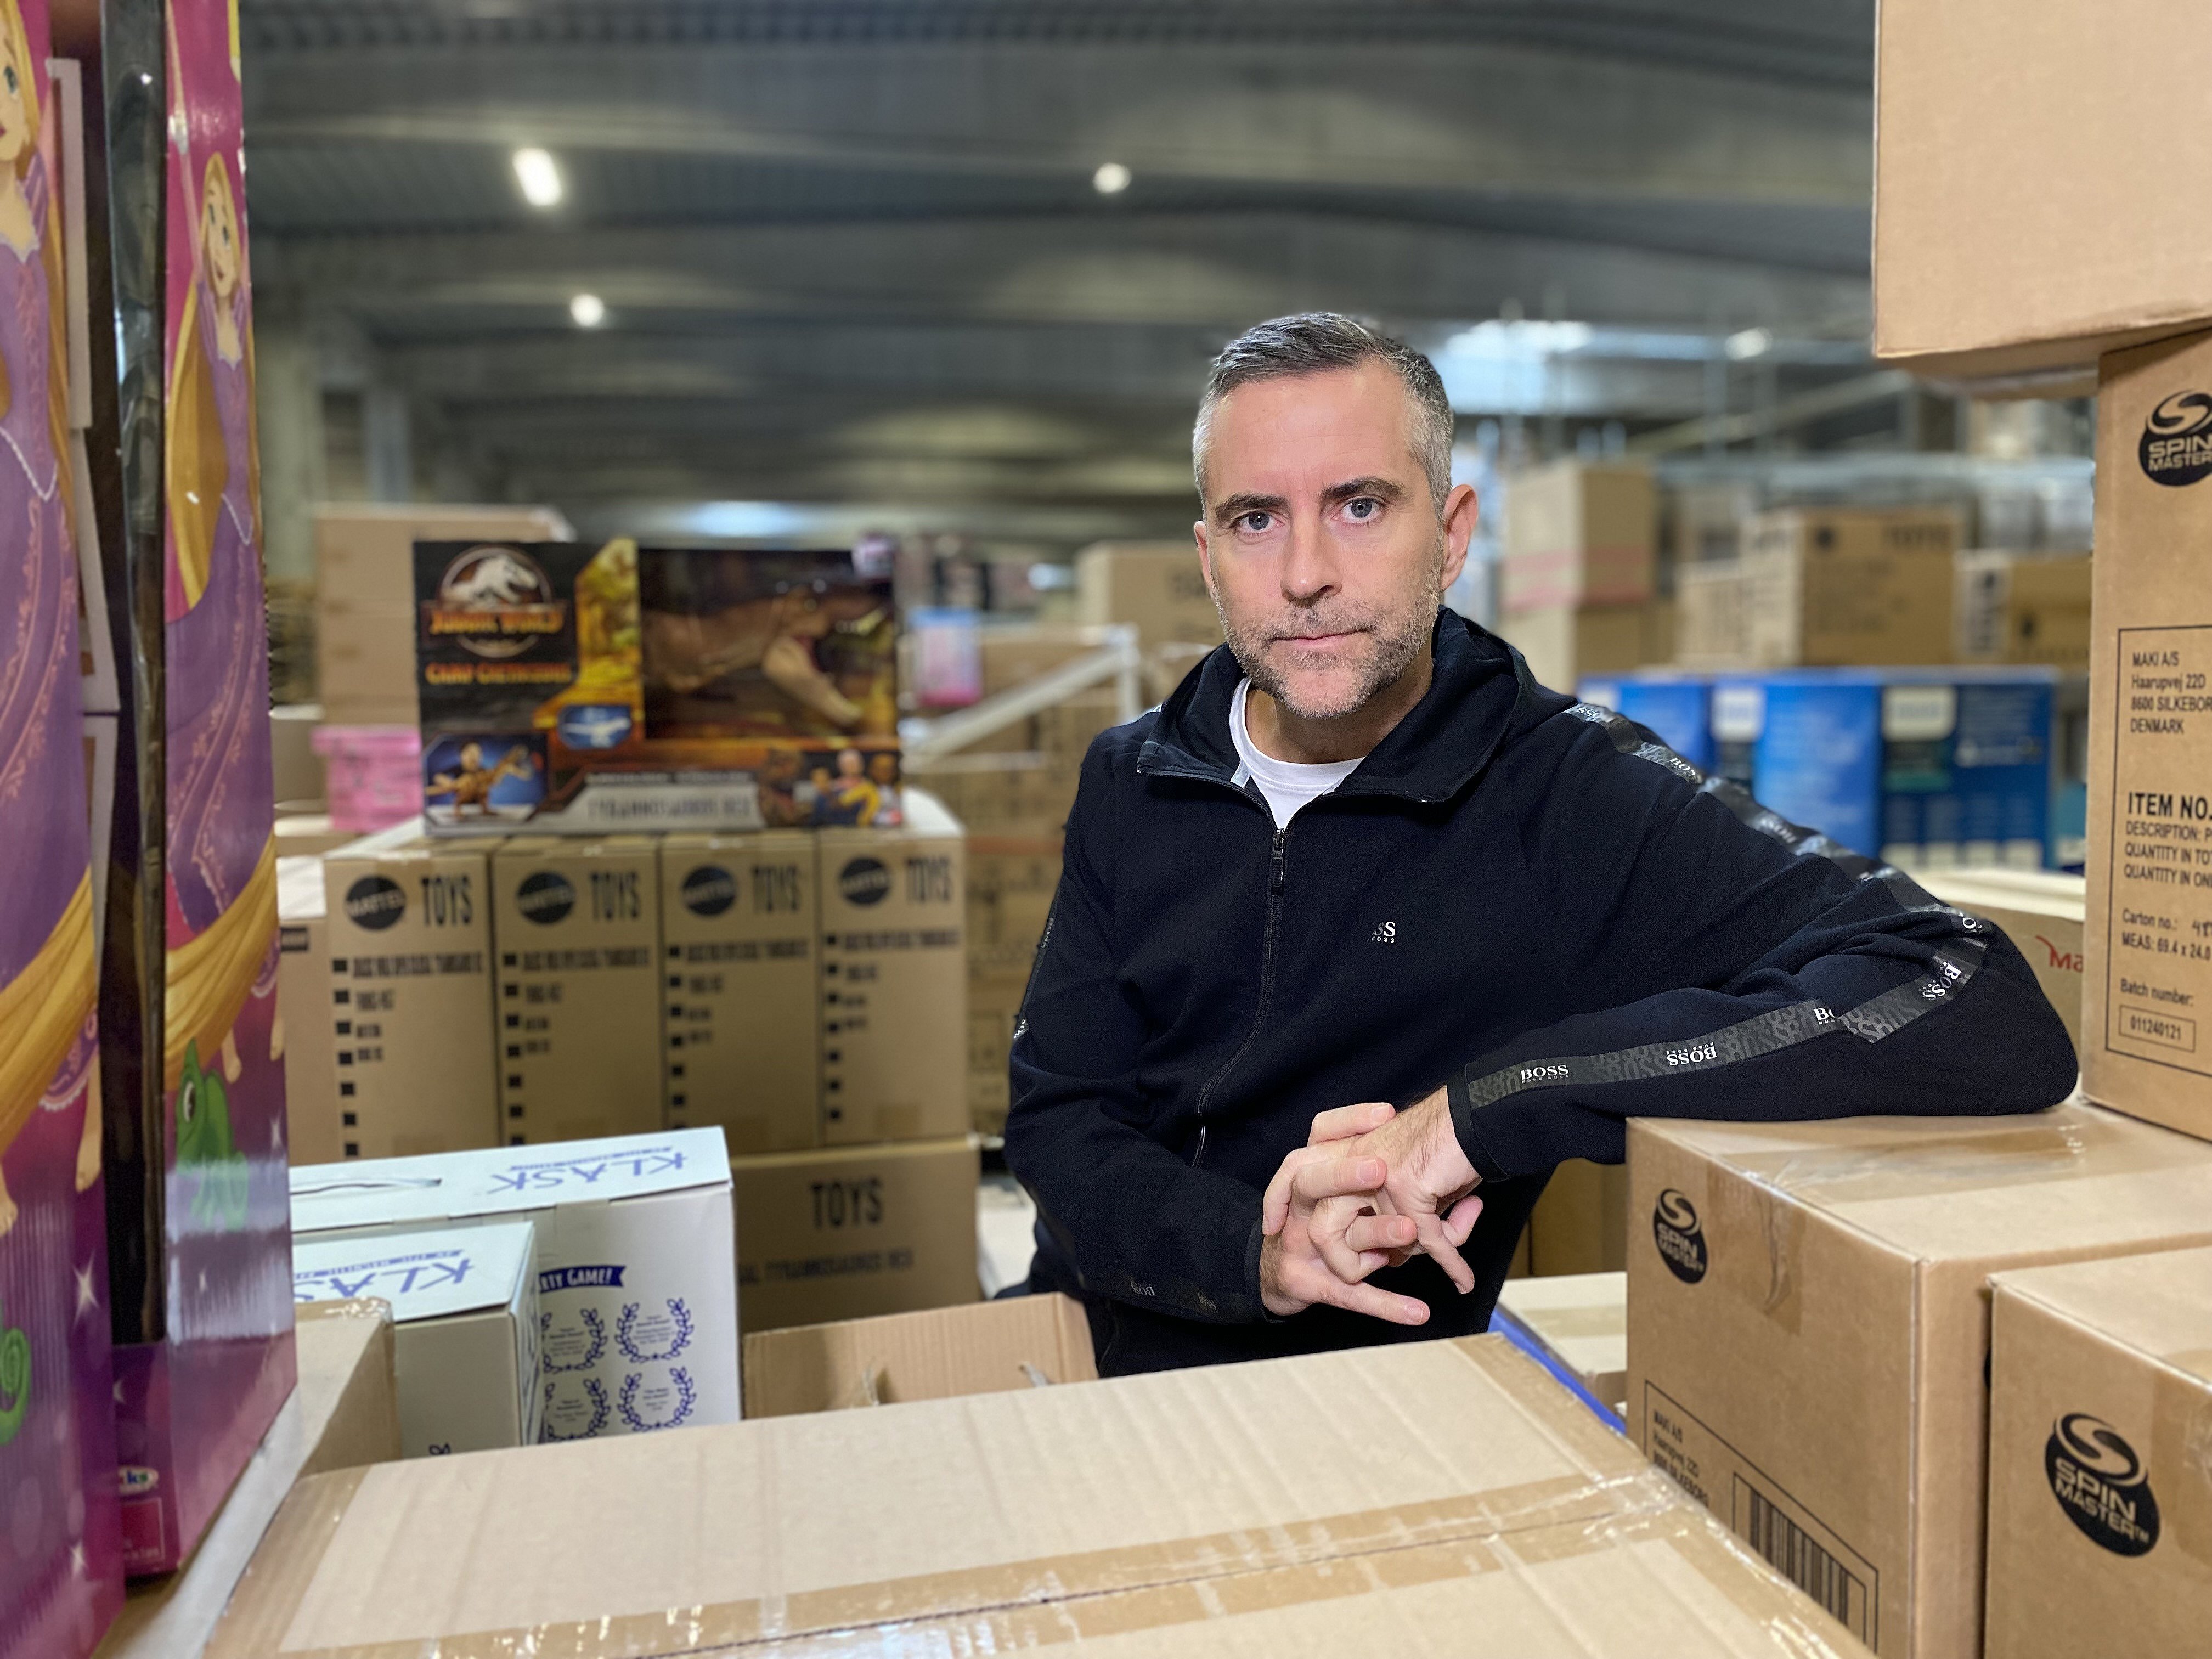 Northern kaos Formand Coolshops lager i Herning mangler flere hundrede medarbejdere – ejer  frygter, de drukner i succes | TV MIDTVEST